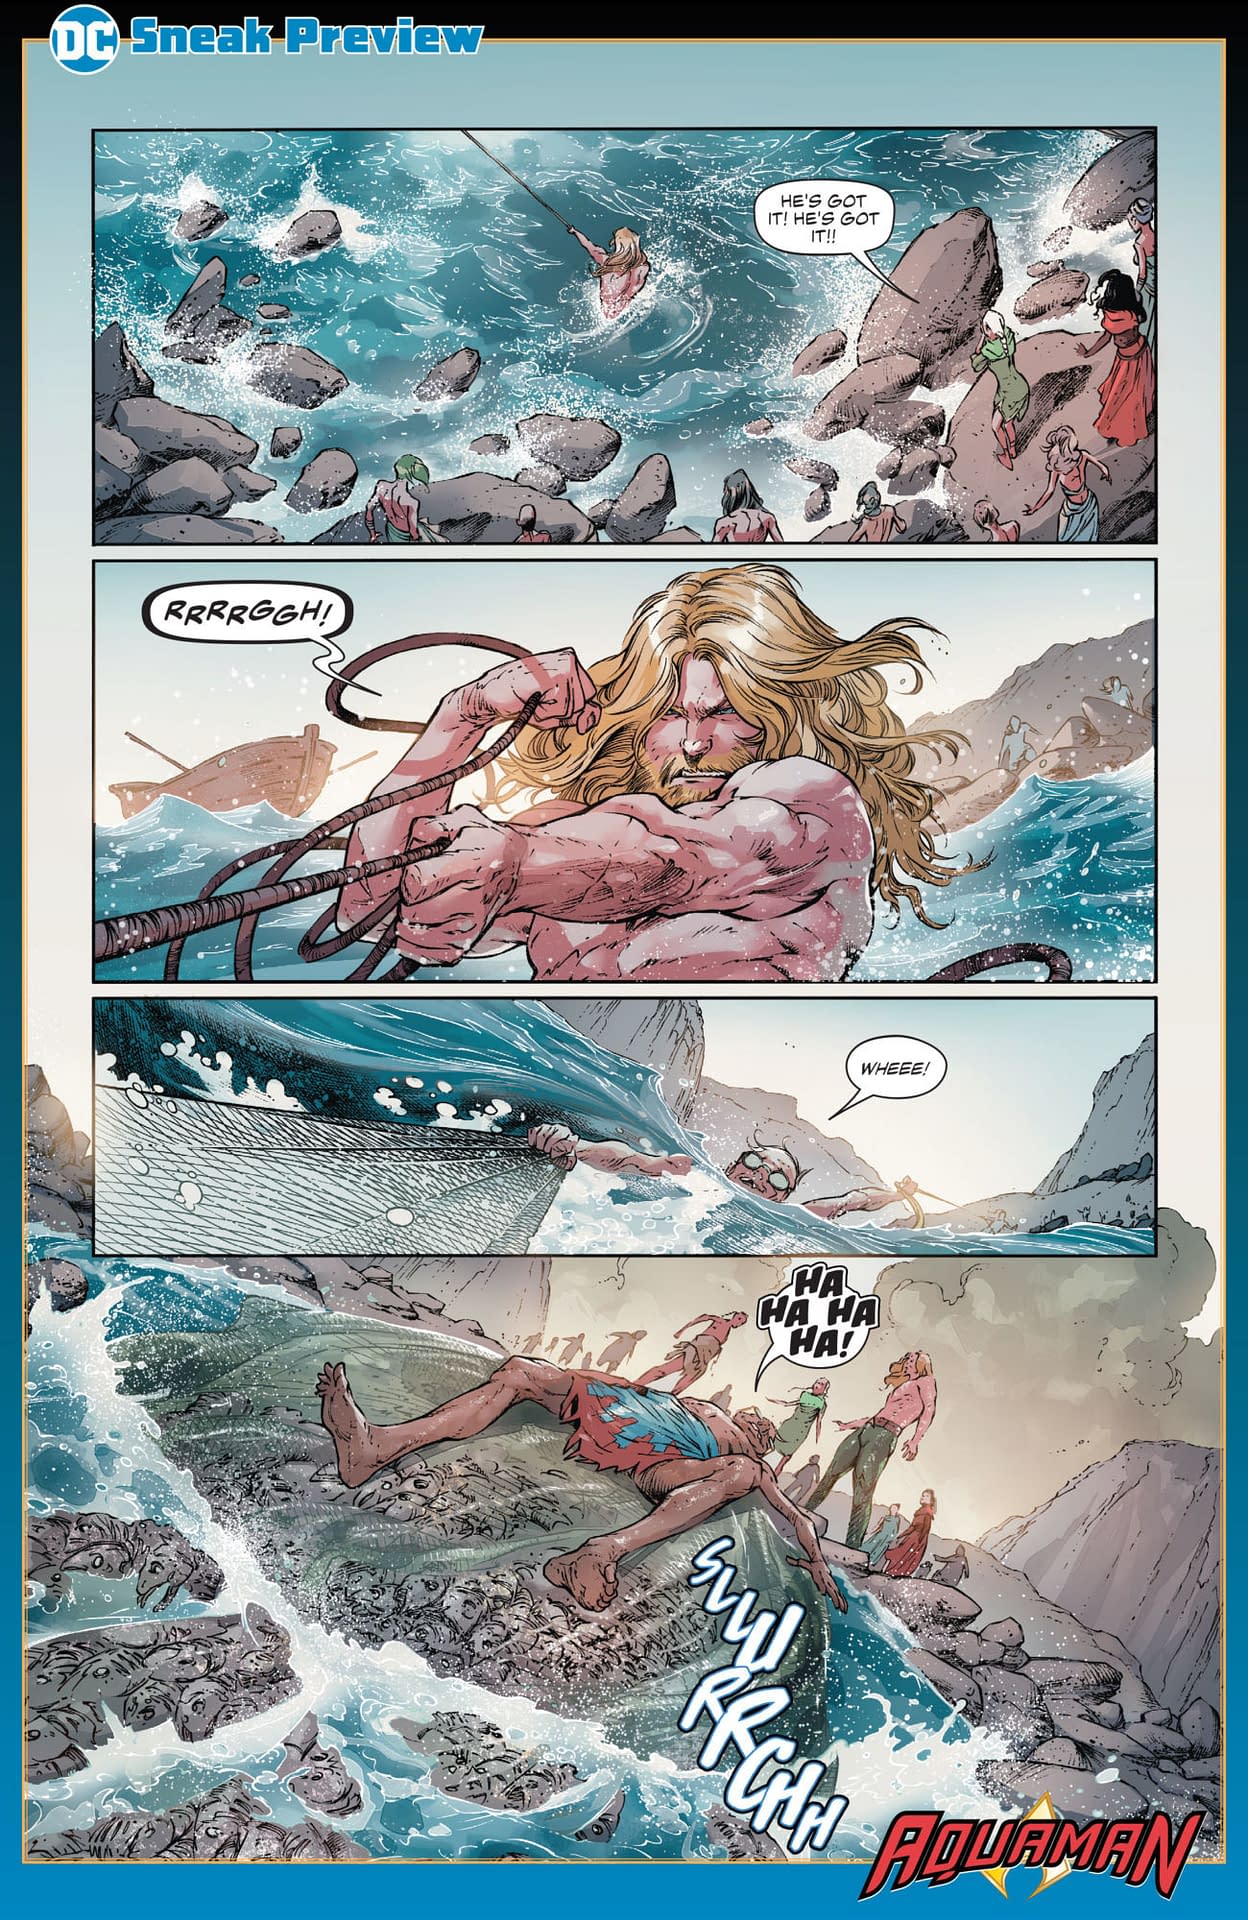 A New Origin for Aquaman in DeConnick and Rocha's Aquaman #43?